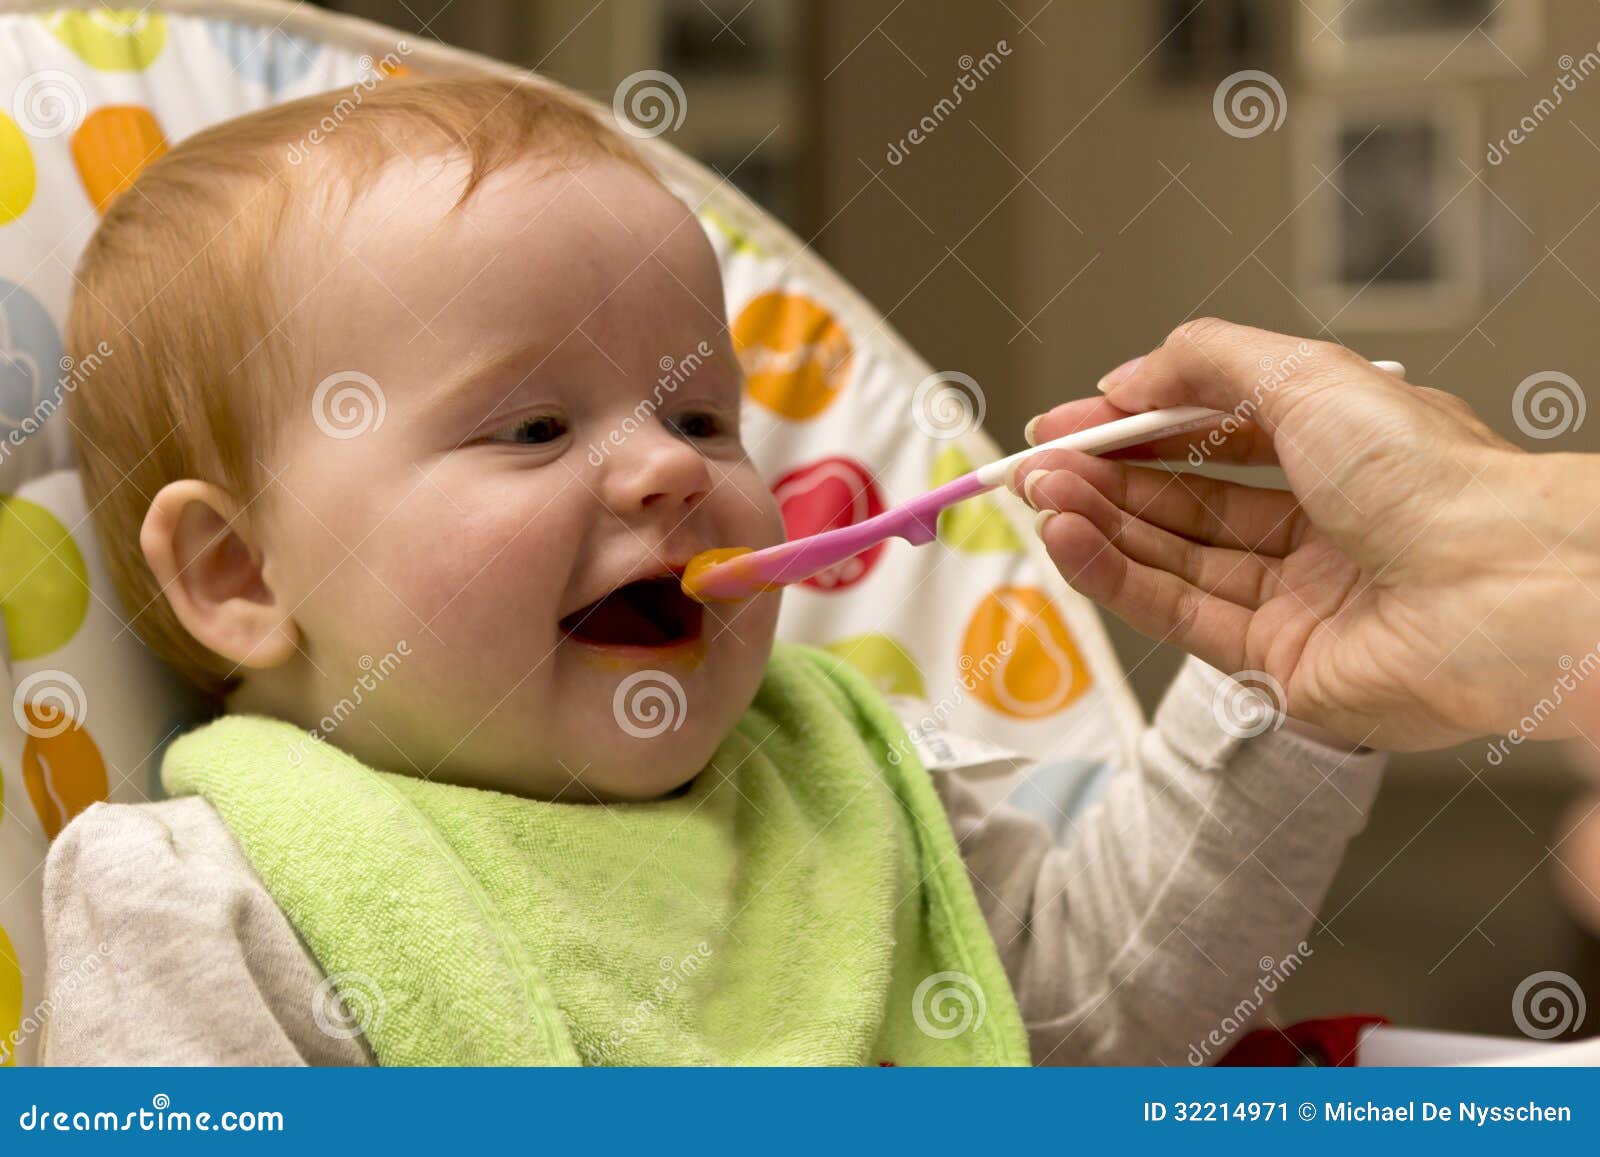 吃粥的逗人喜爱的小女孩 库存照片. 图片 包括有 逗人喜爱, 休闲, 婴孩, 健康, 家庭, 提供, 孩子 - 82538332